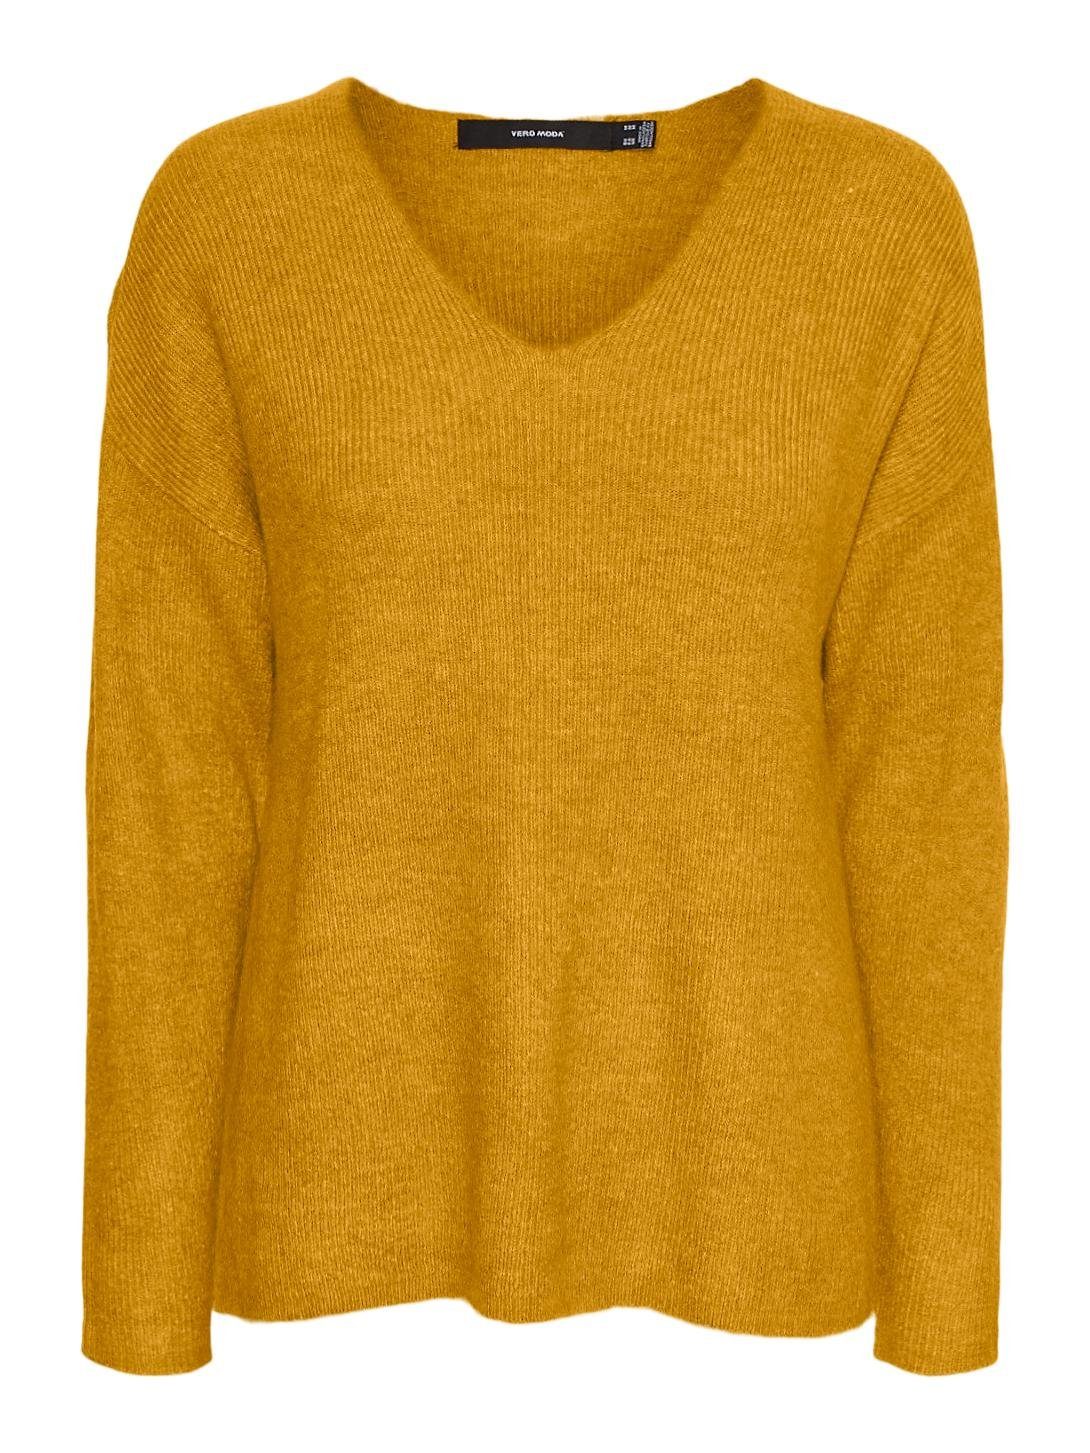 Vero Moda Strickpullover Strickpullover V-Ausschnitt Sweater Gelb in VMCREWLEFILE 6112 Langarm